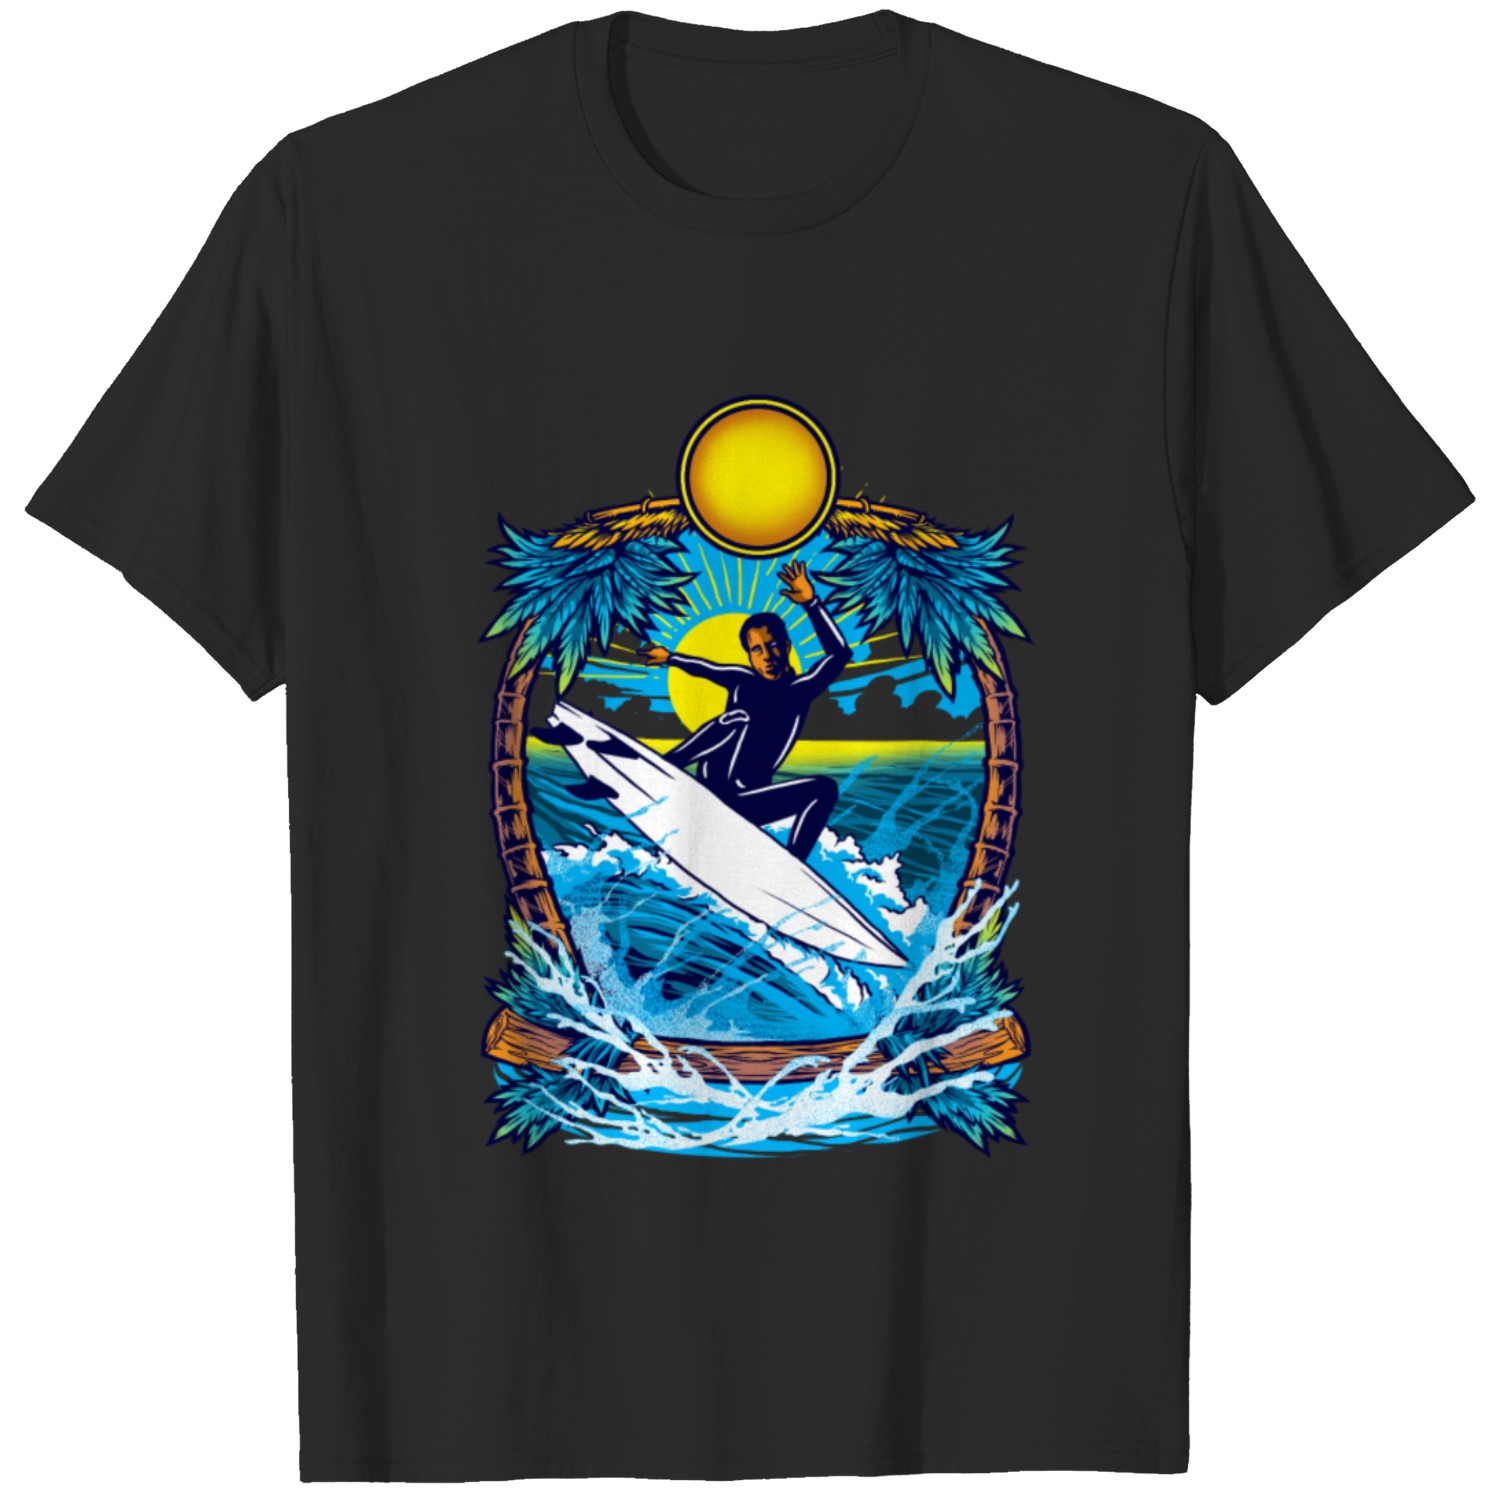 Blue surfer T-shirt